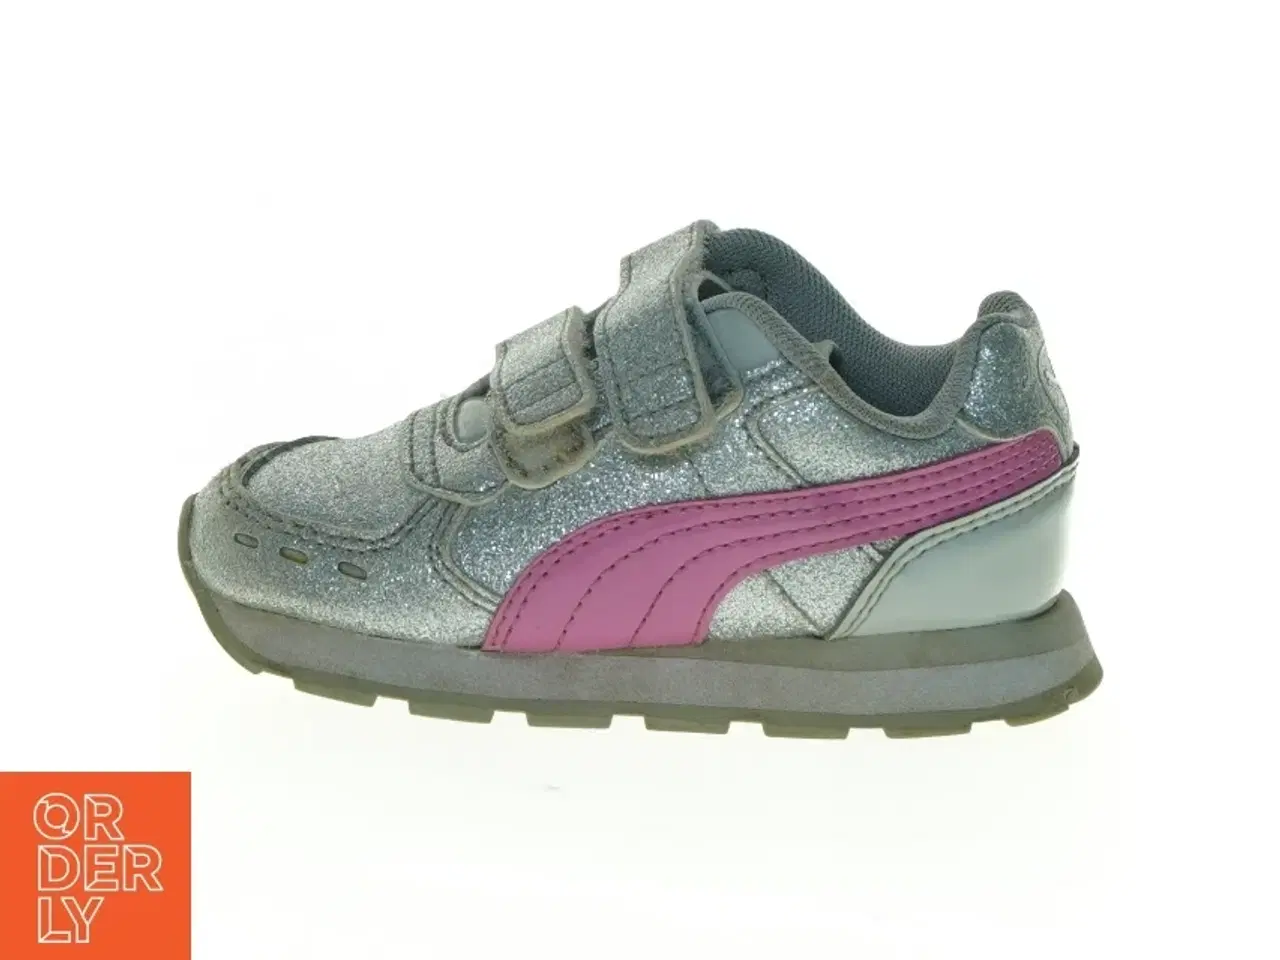 Billede 1 - Sølvfarvede sneakers med lyserøde detaljer fra Puma (str. 22)